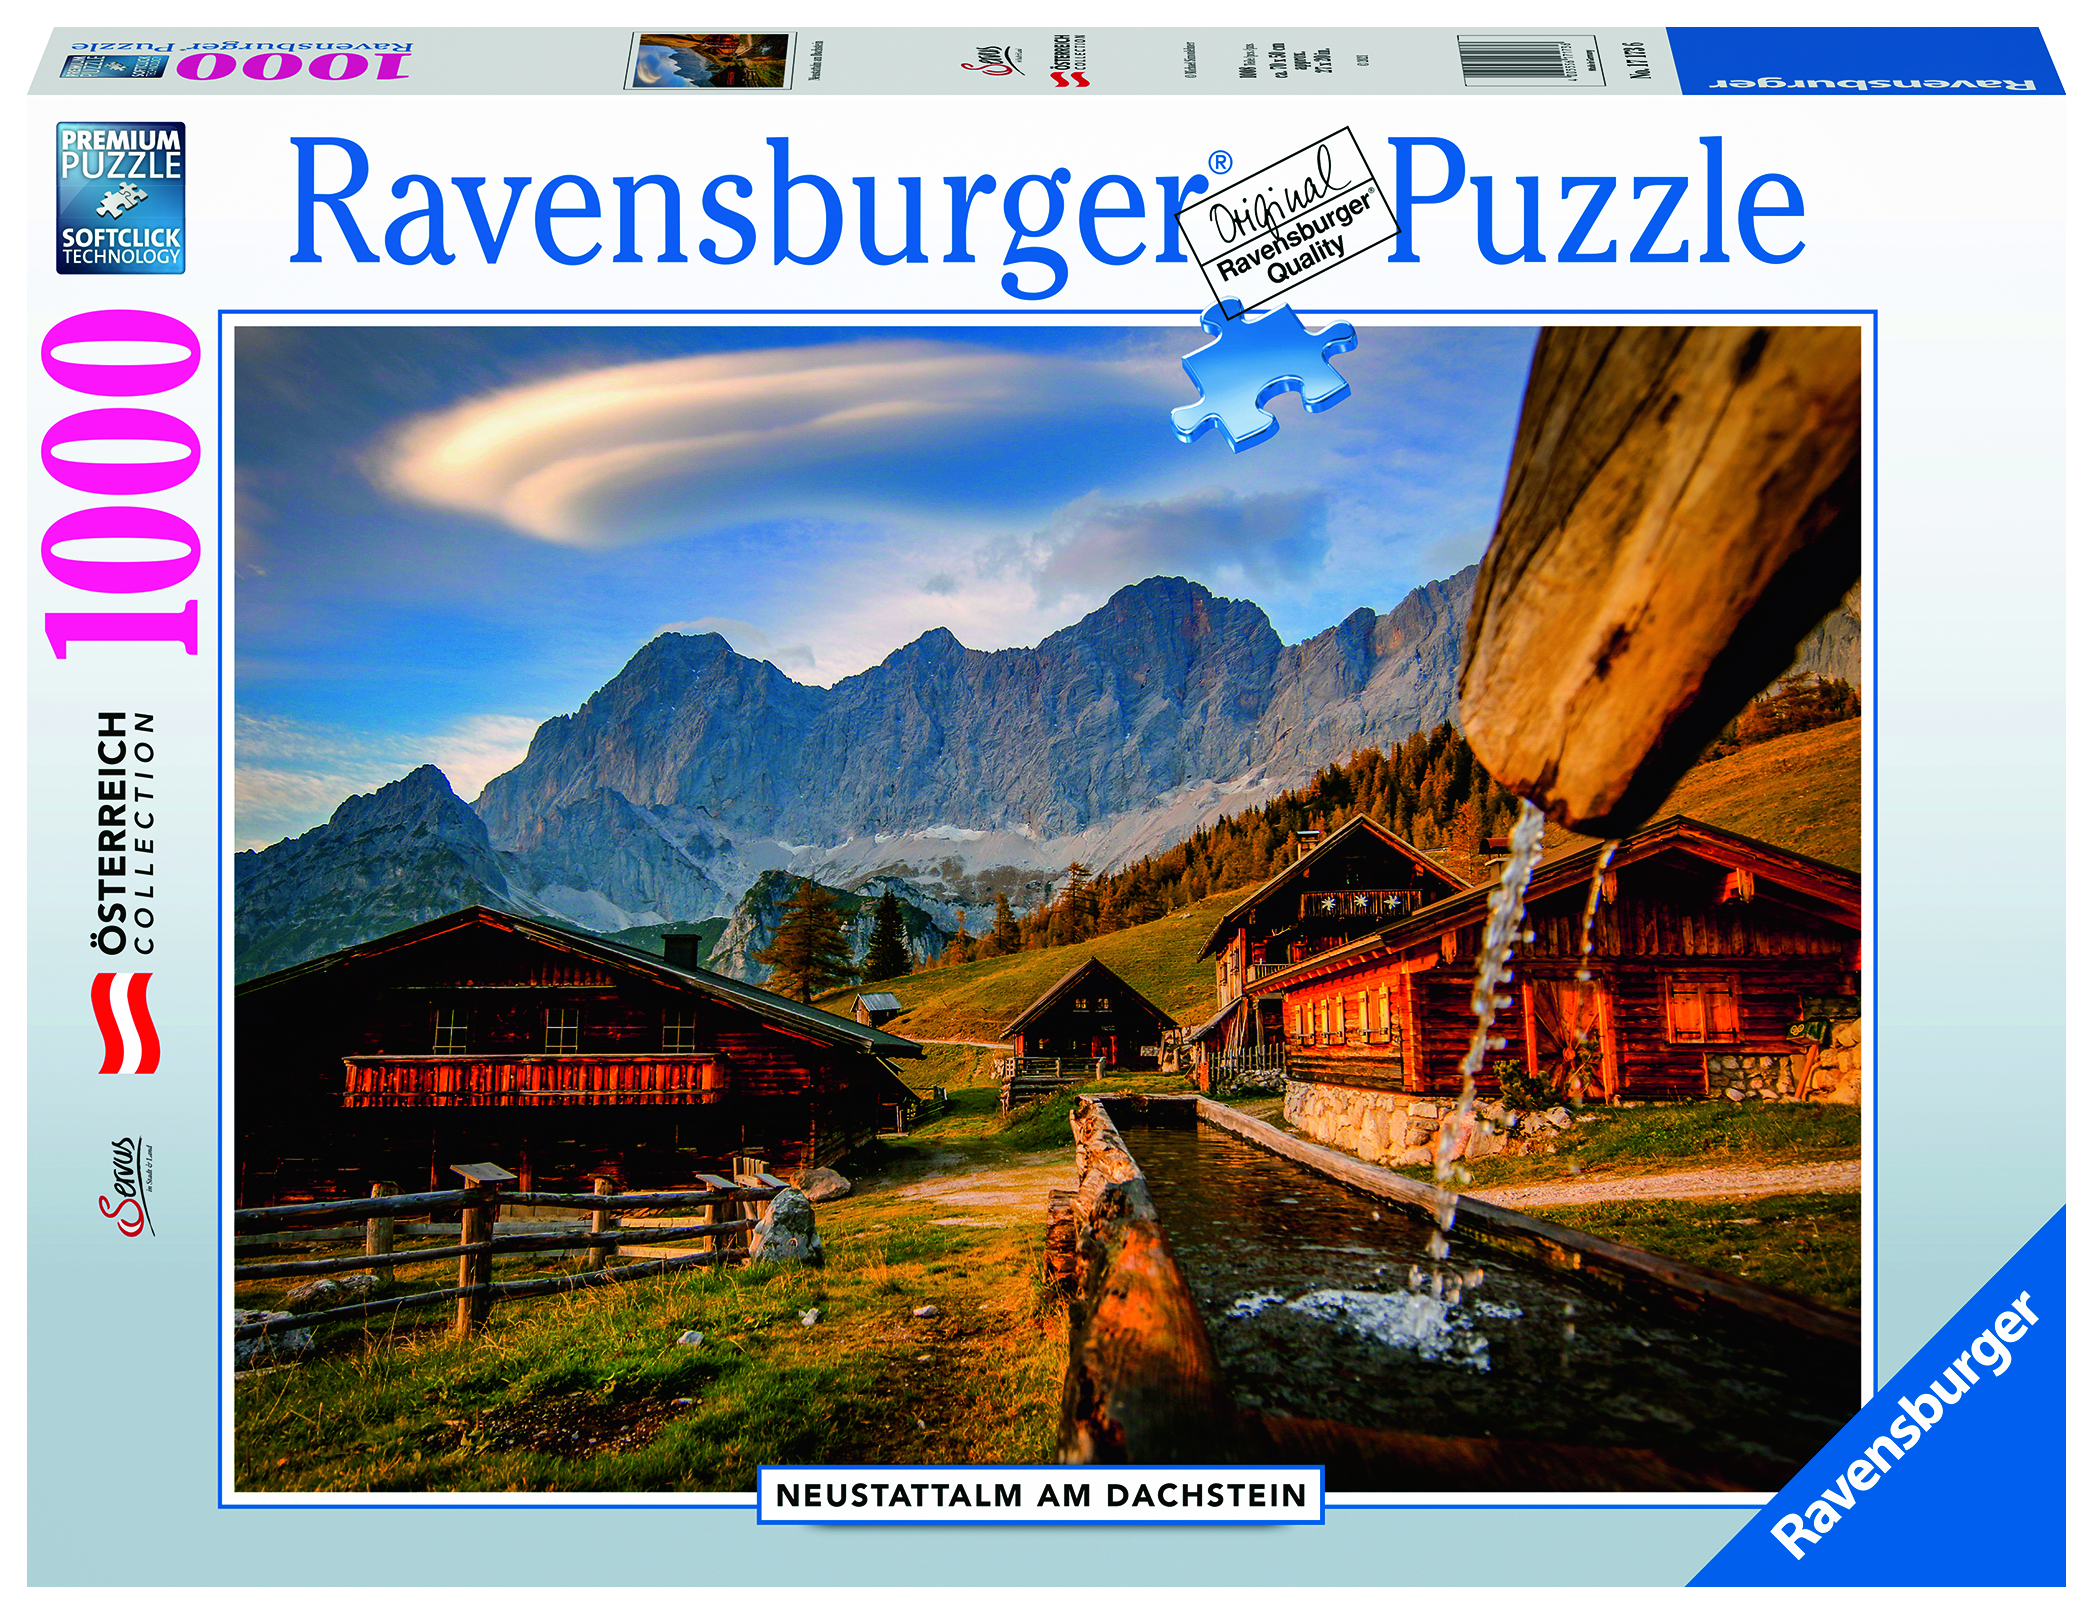 RAVENSBURGER 17173 Neustattalm am Mehrfarbig Puzzle Dachstein